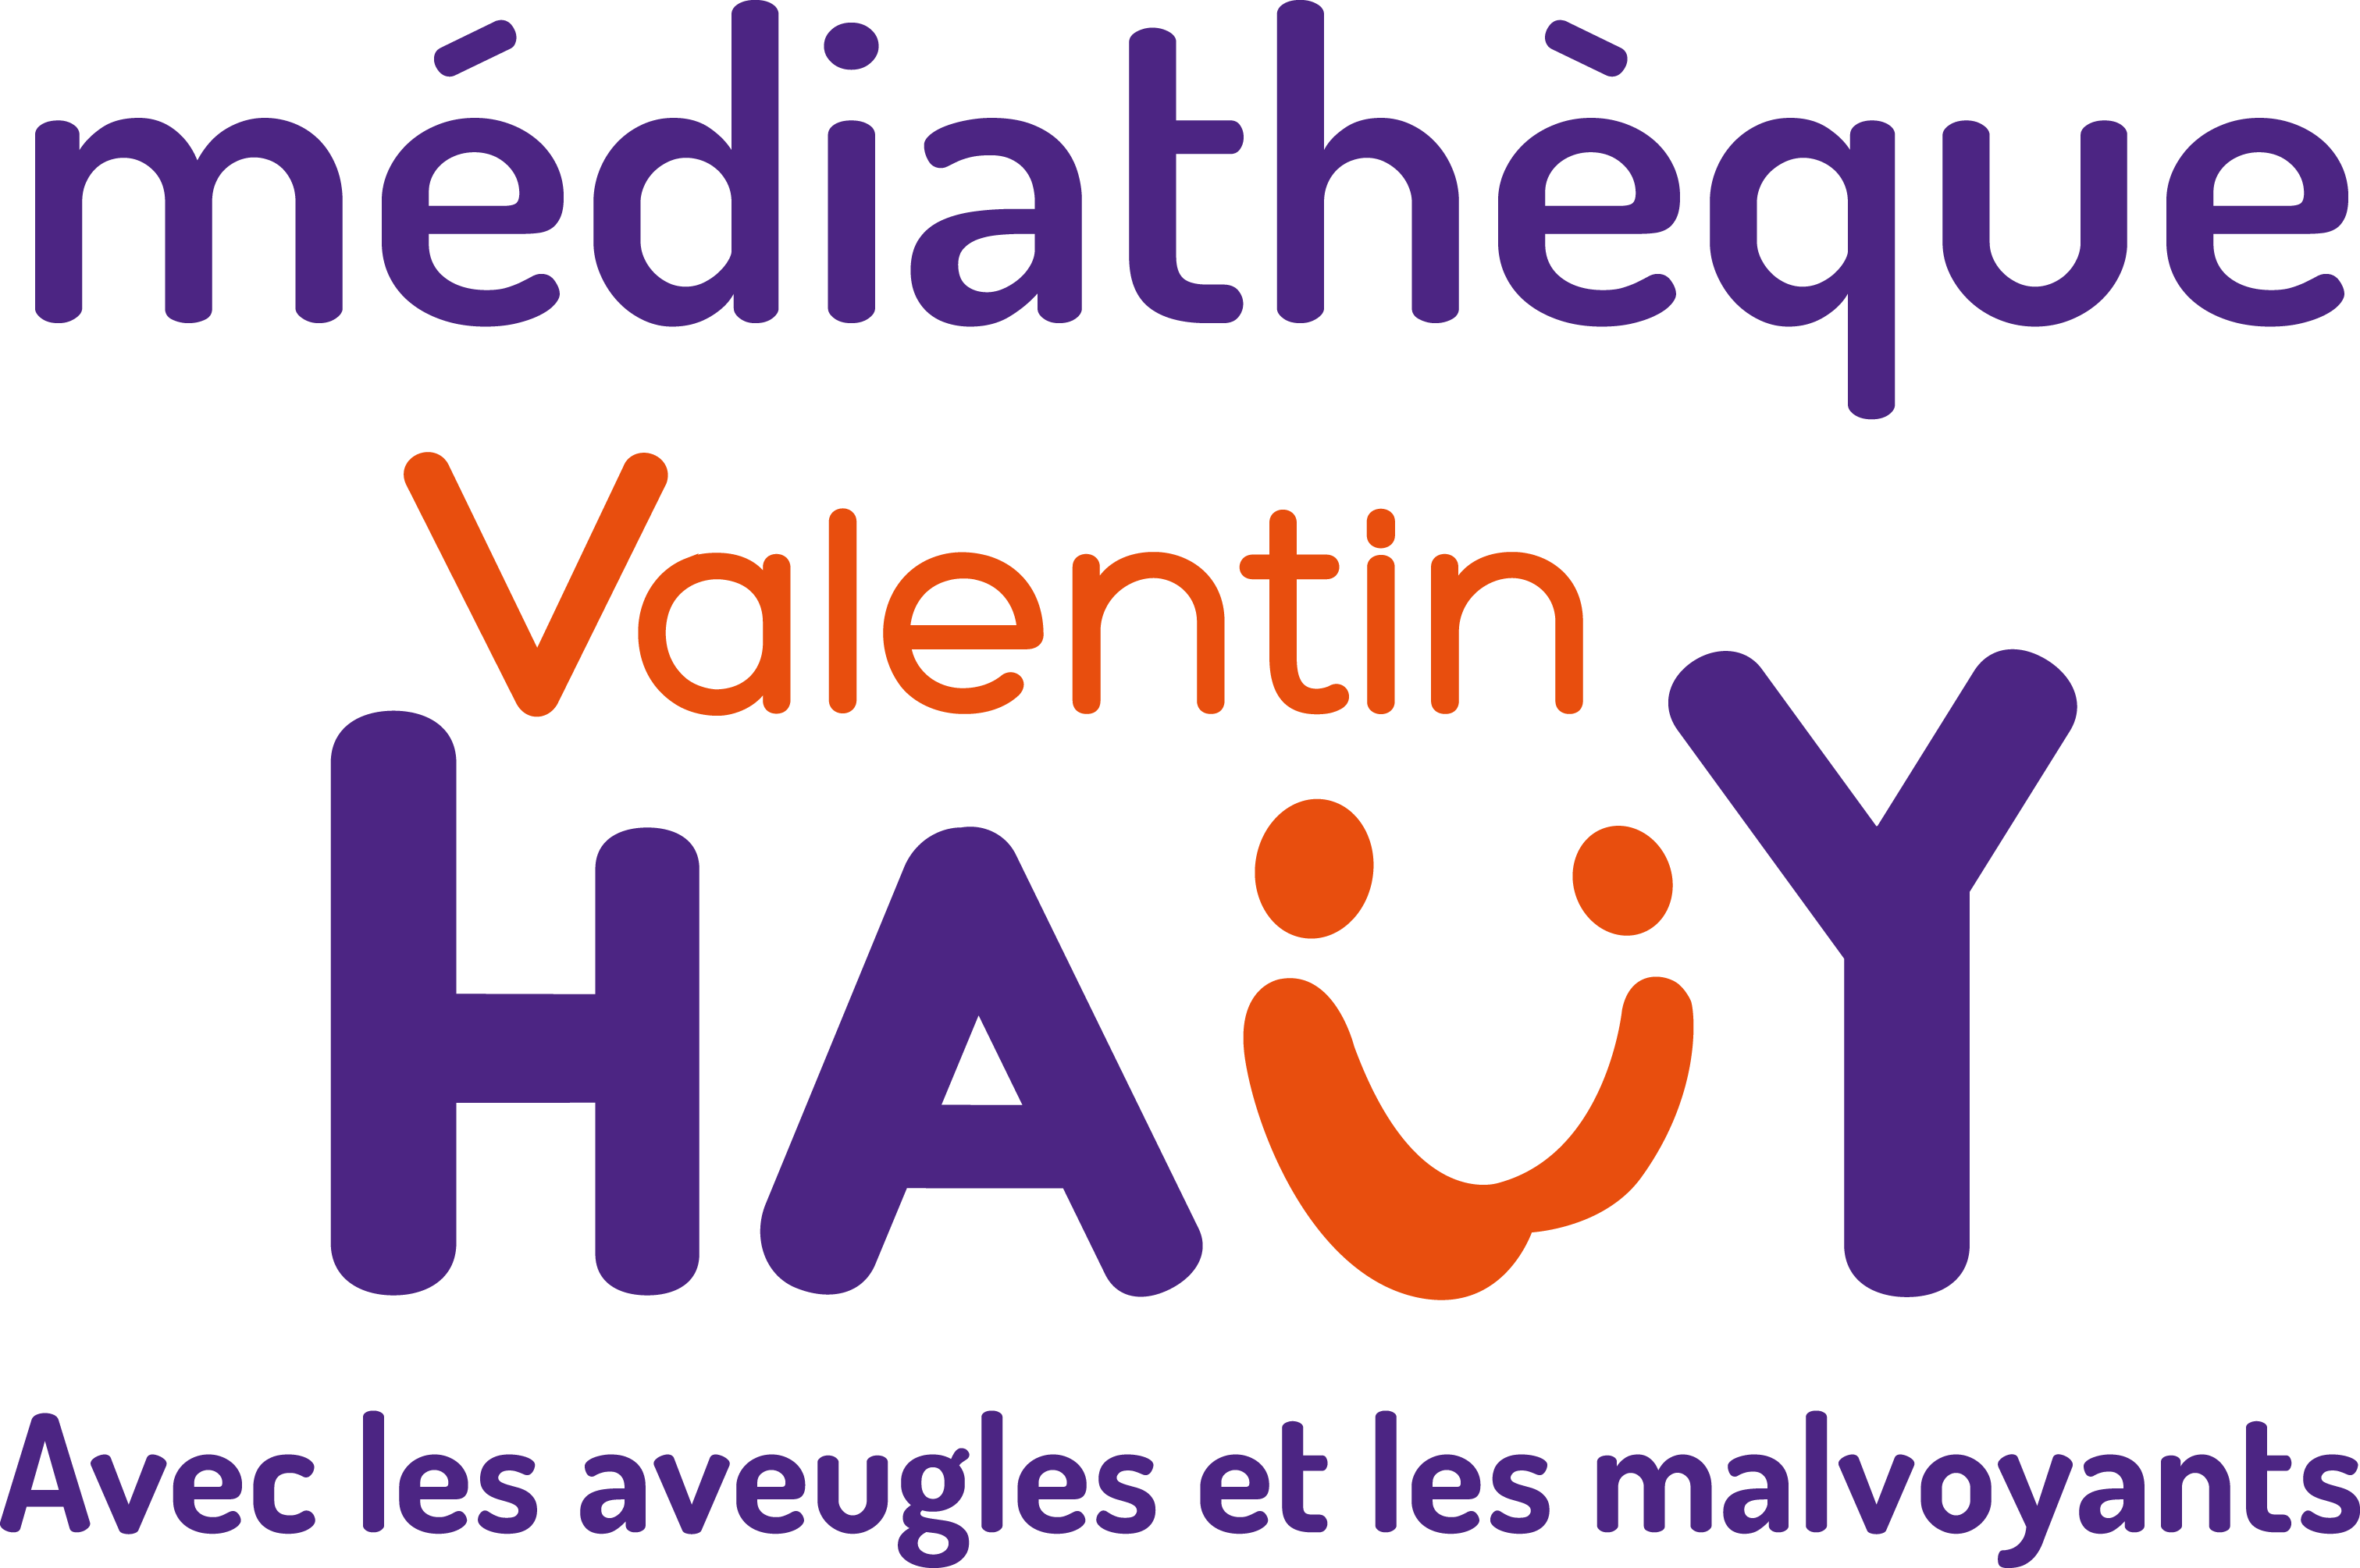 logo mediatheque Valentin Hauy